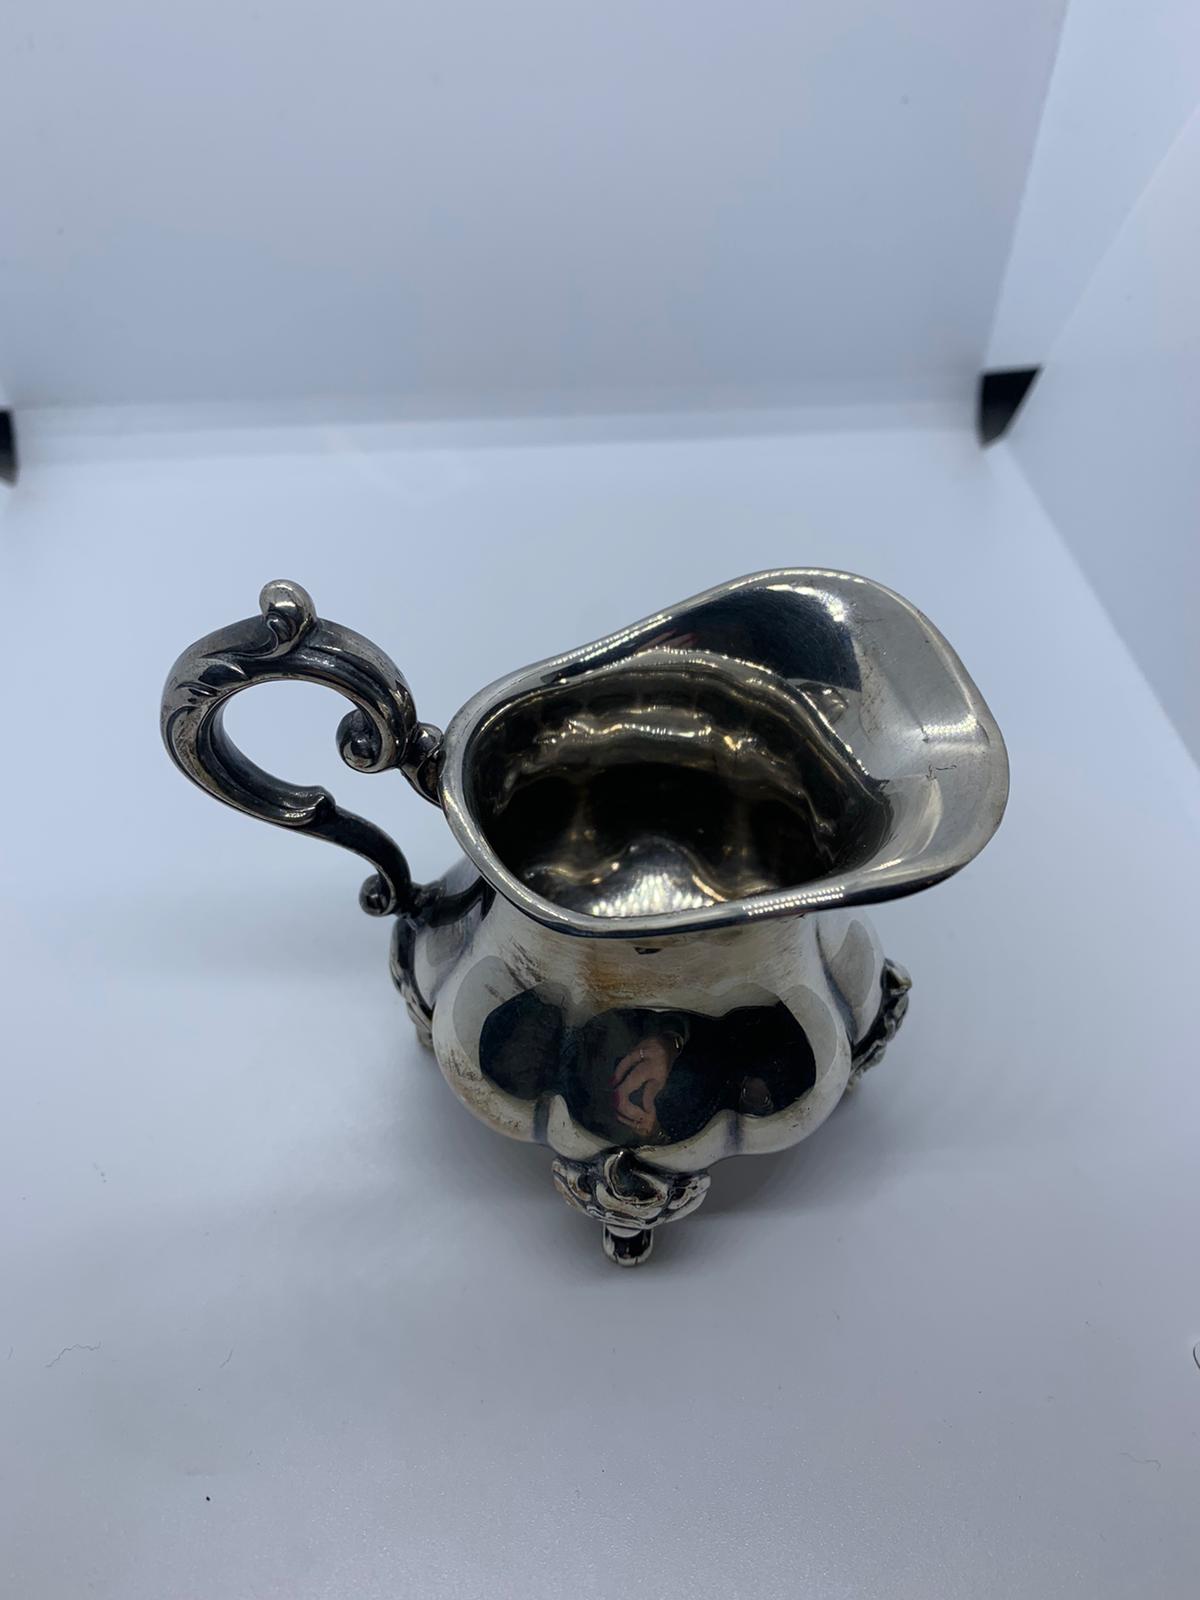 Silver cream jug - Image 2 of 3